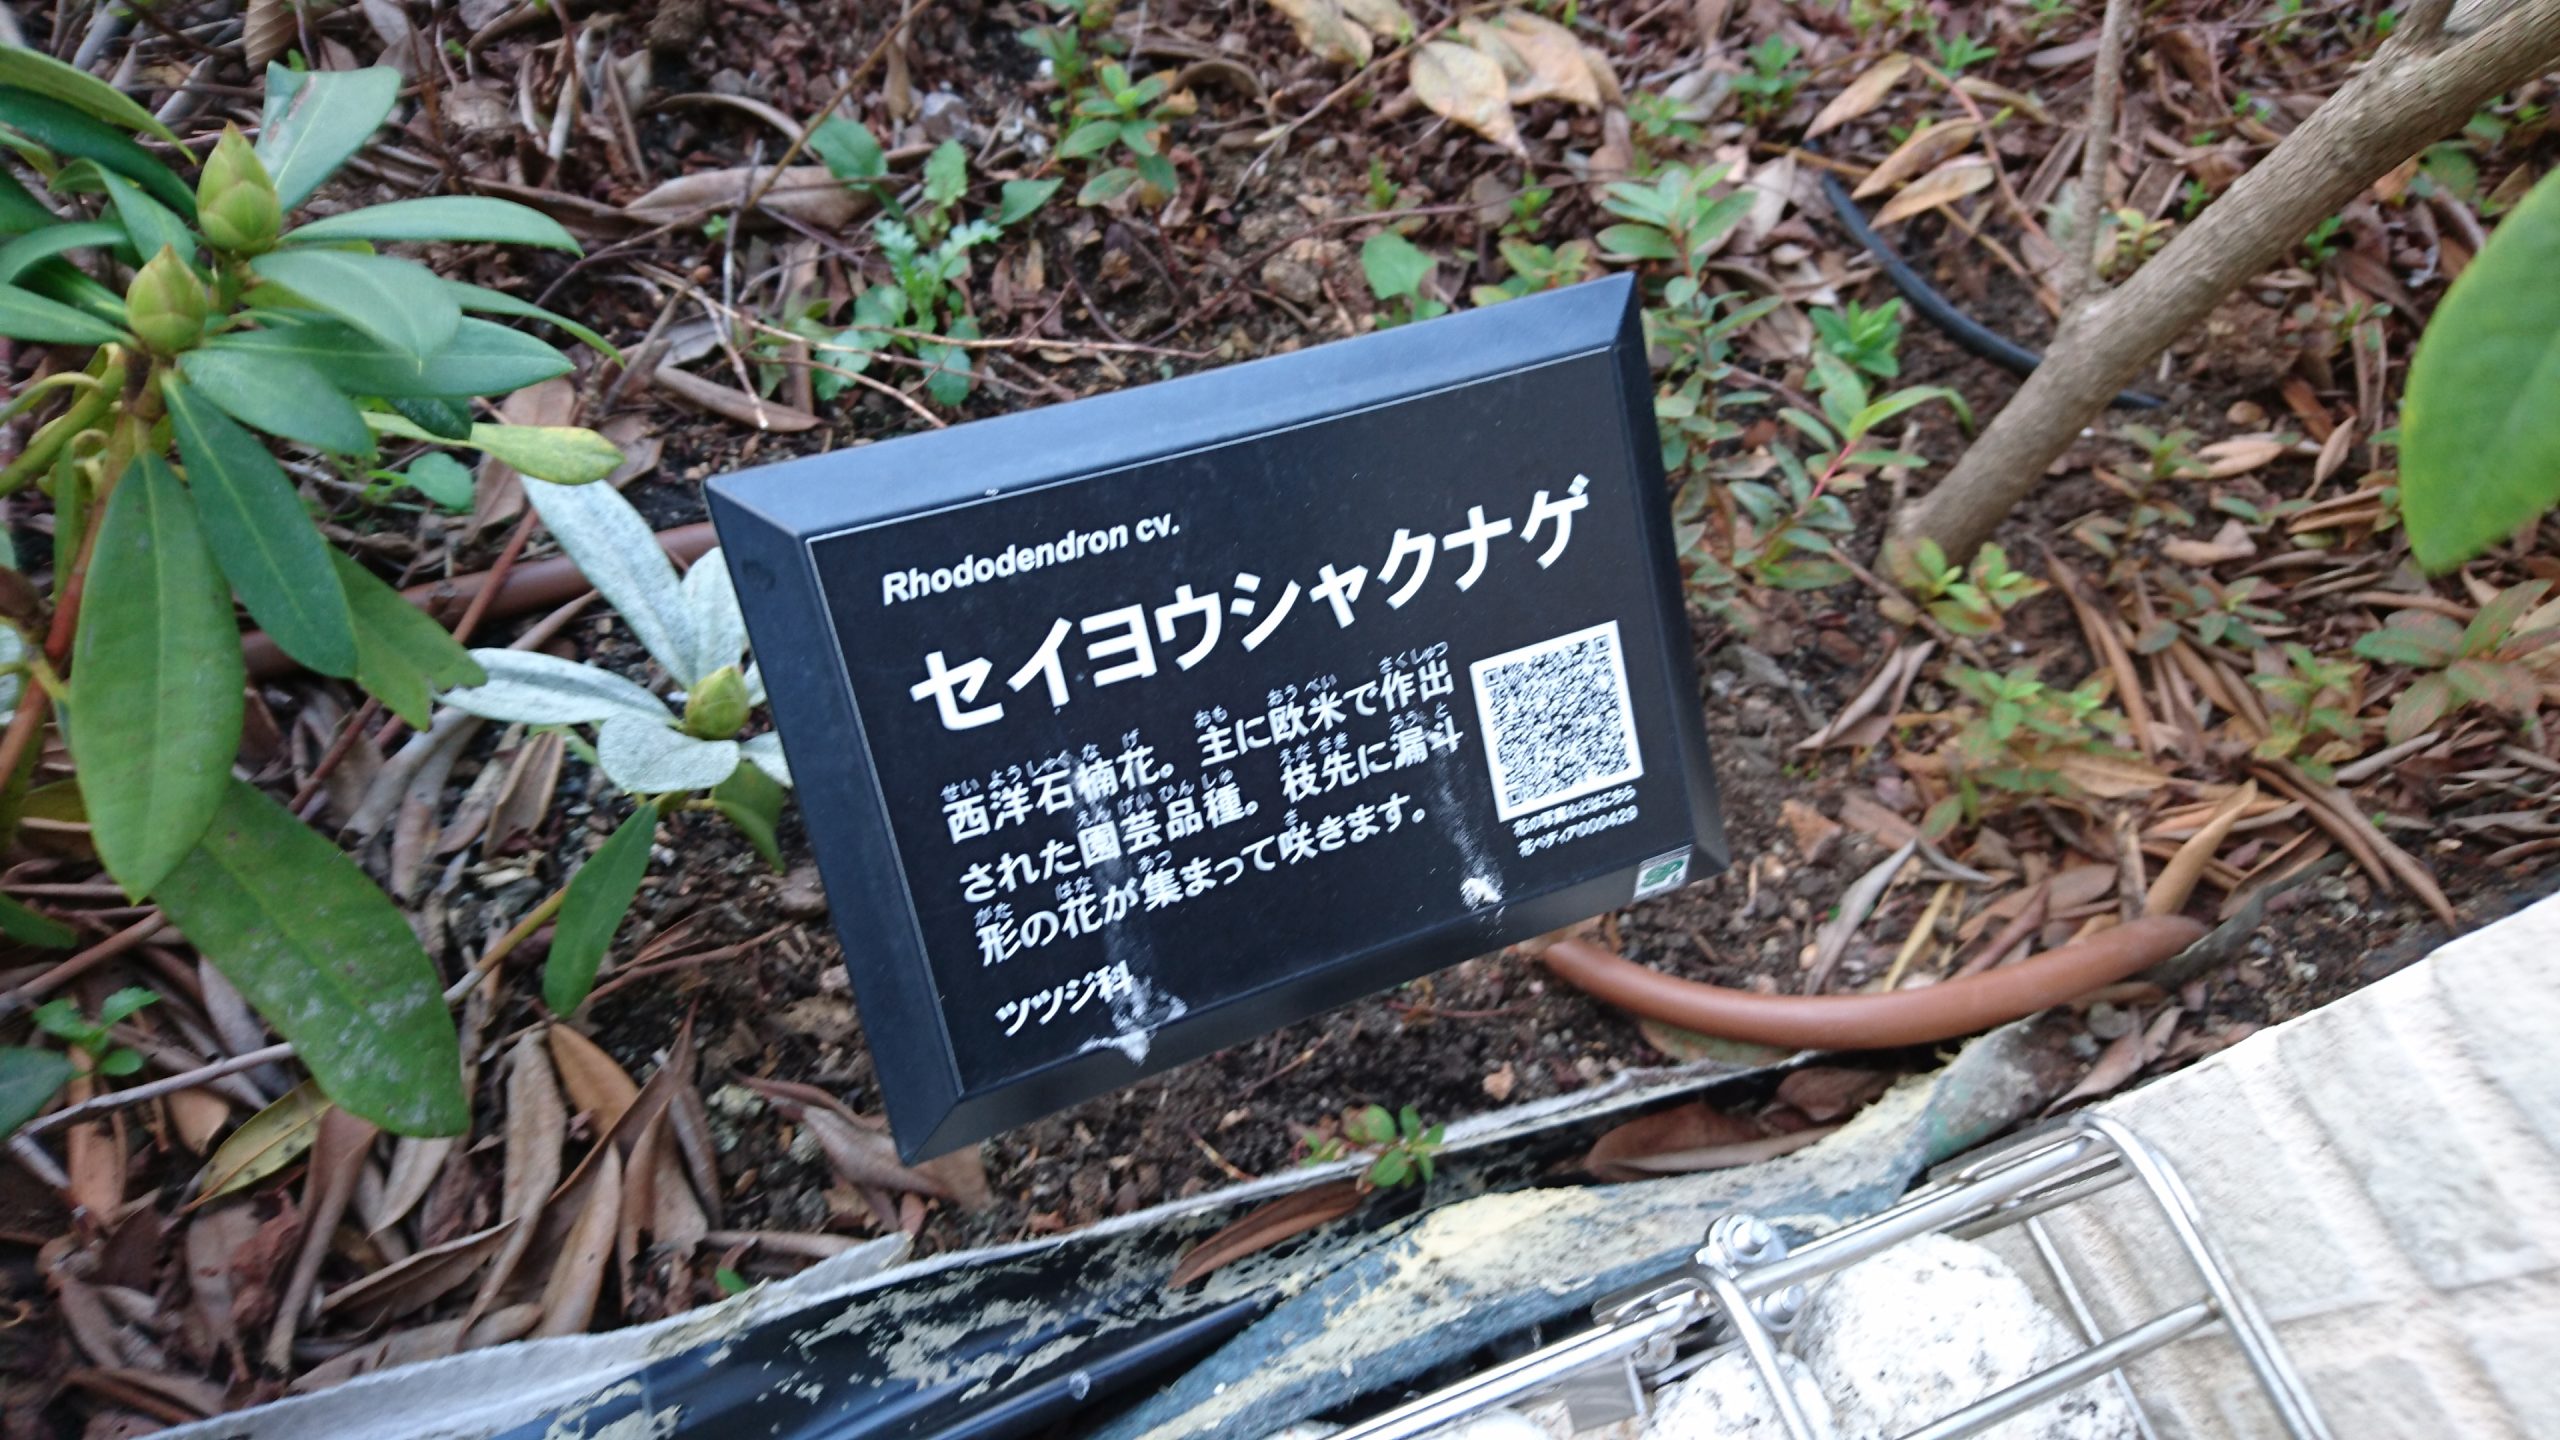 QRコード付き樹名板で植物が学べる屋上庭園